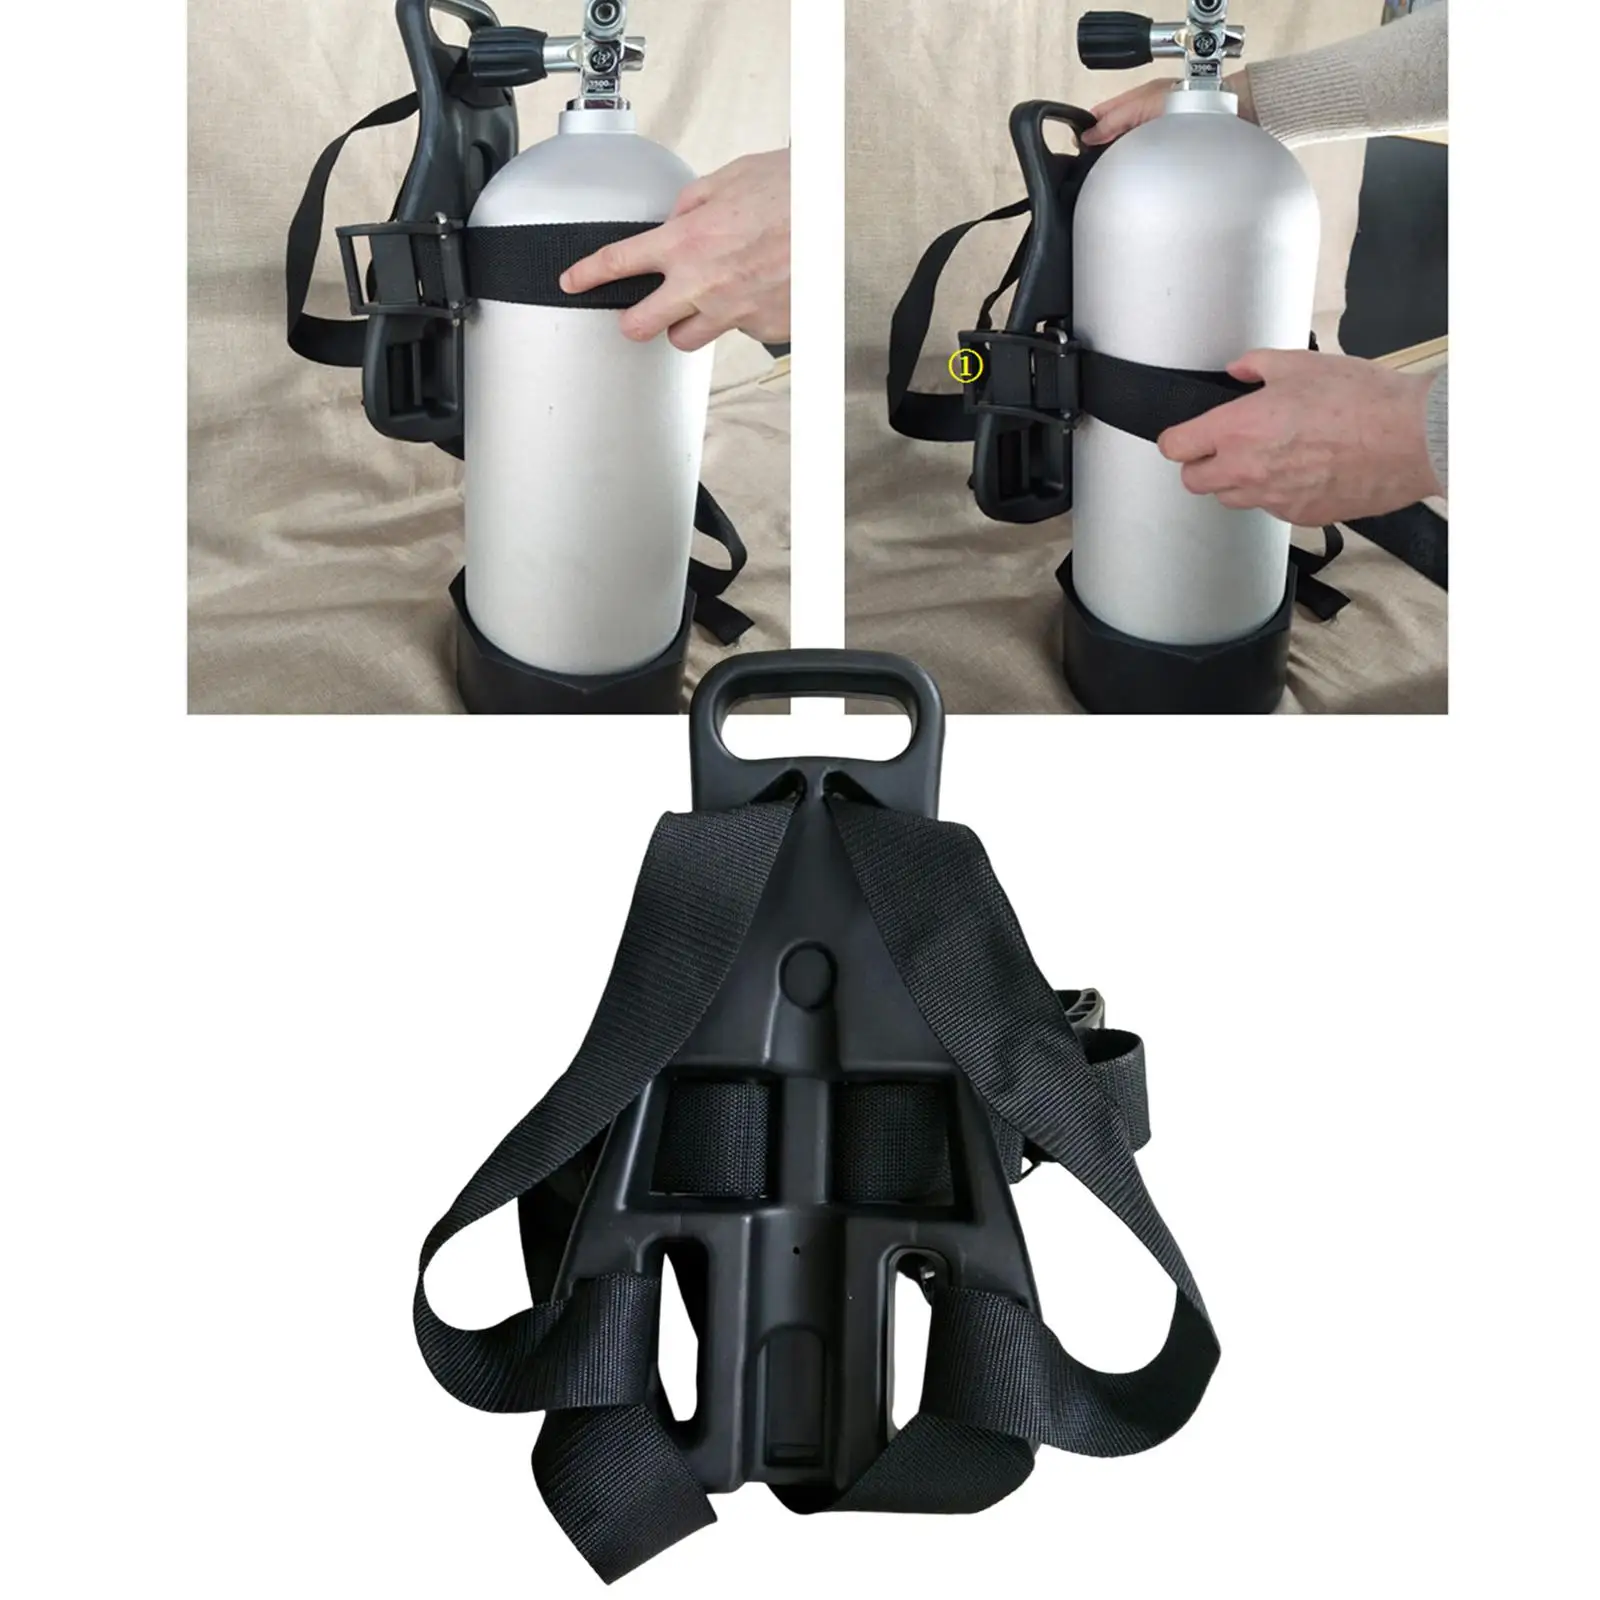 Scuba Diving Tank Back Pack Snorkeling Freediving Dive Single Oxygen Bottle Support Holder Bracket Backpack for Snorkeling Accs